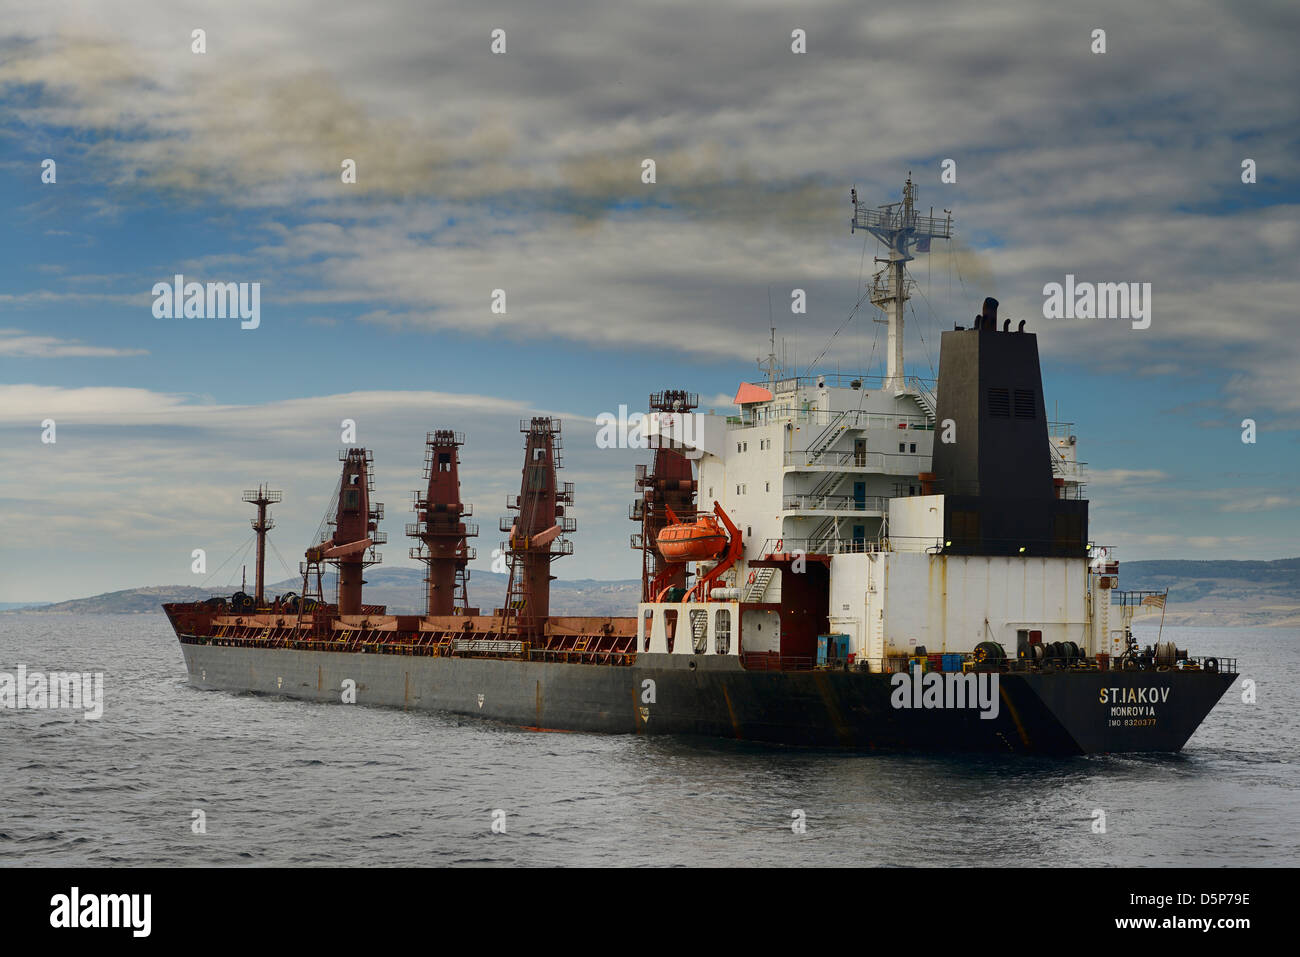 Monrovia vraquier navire dans les Dardanelles Turquie en direction de la mer Égée Banque D'Images